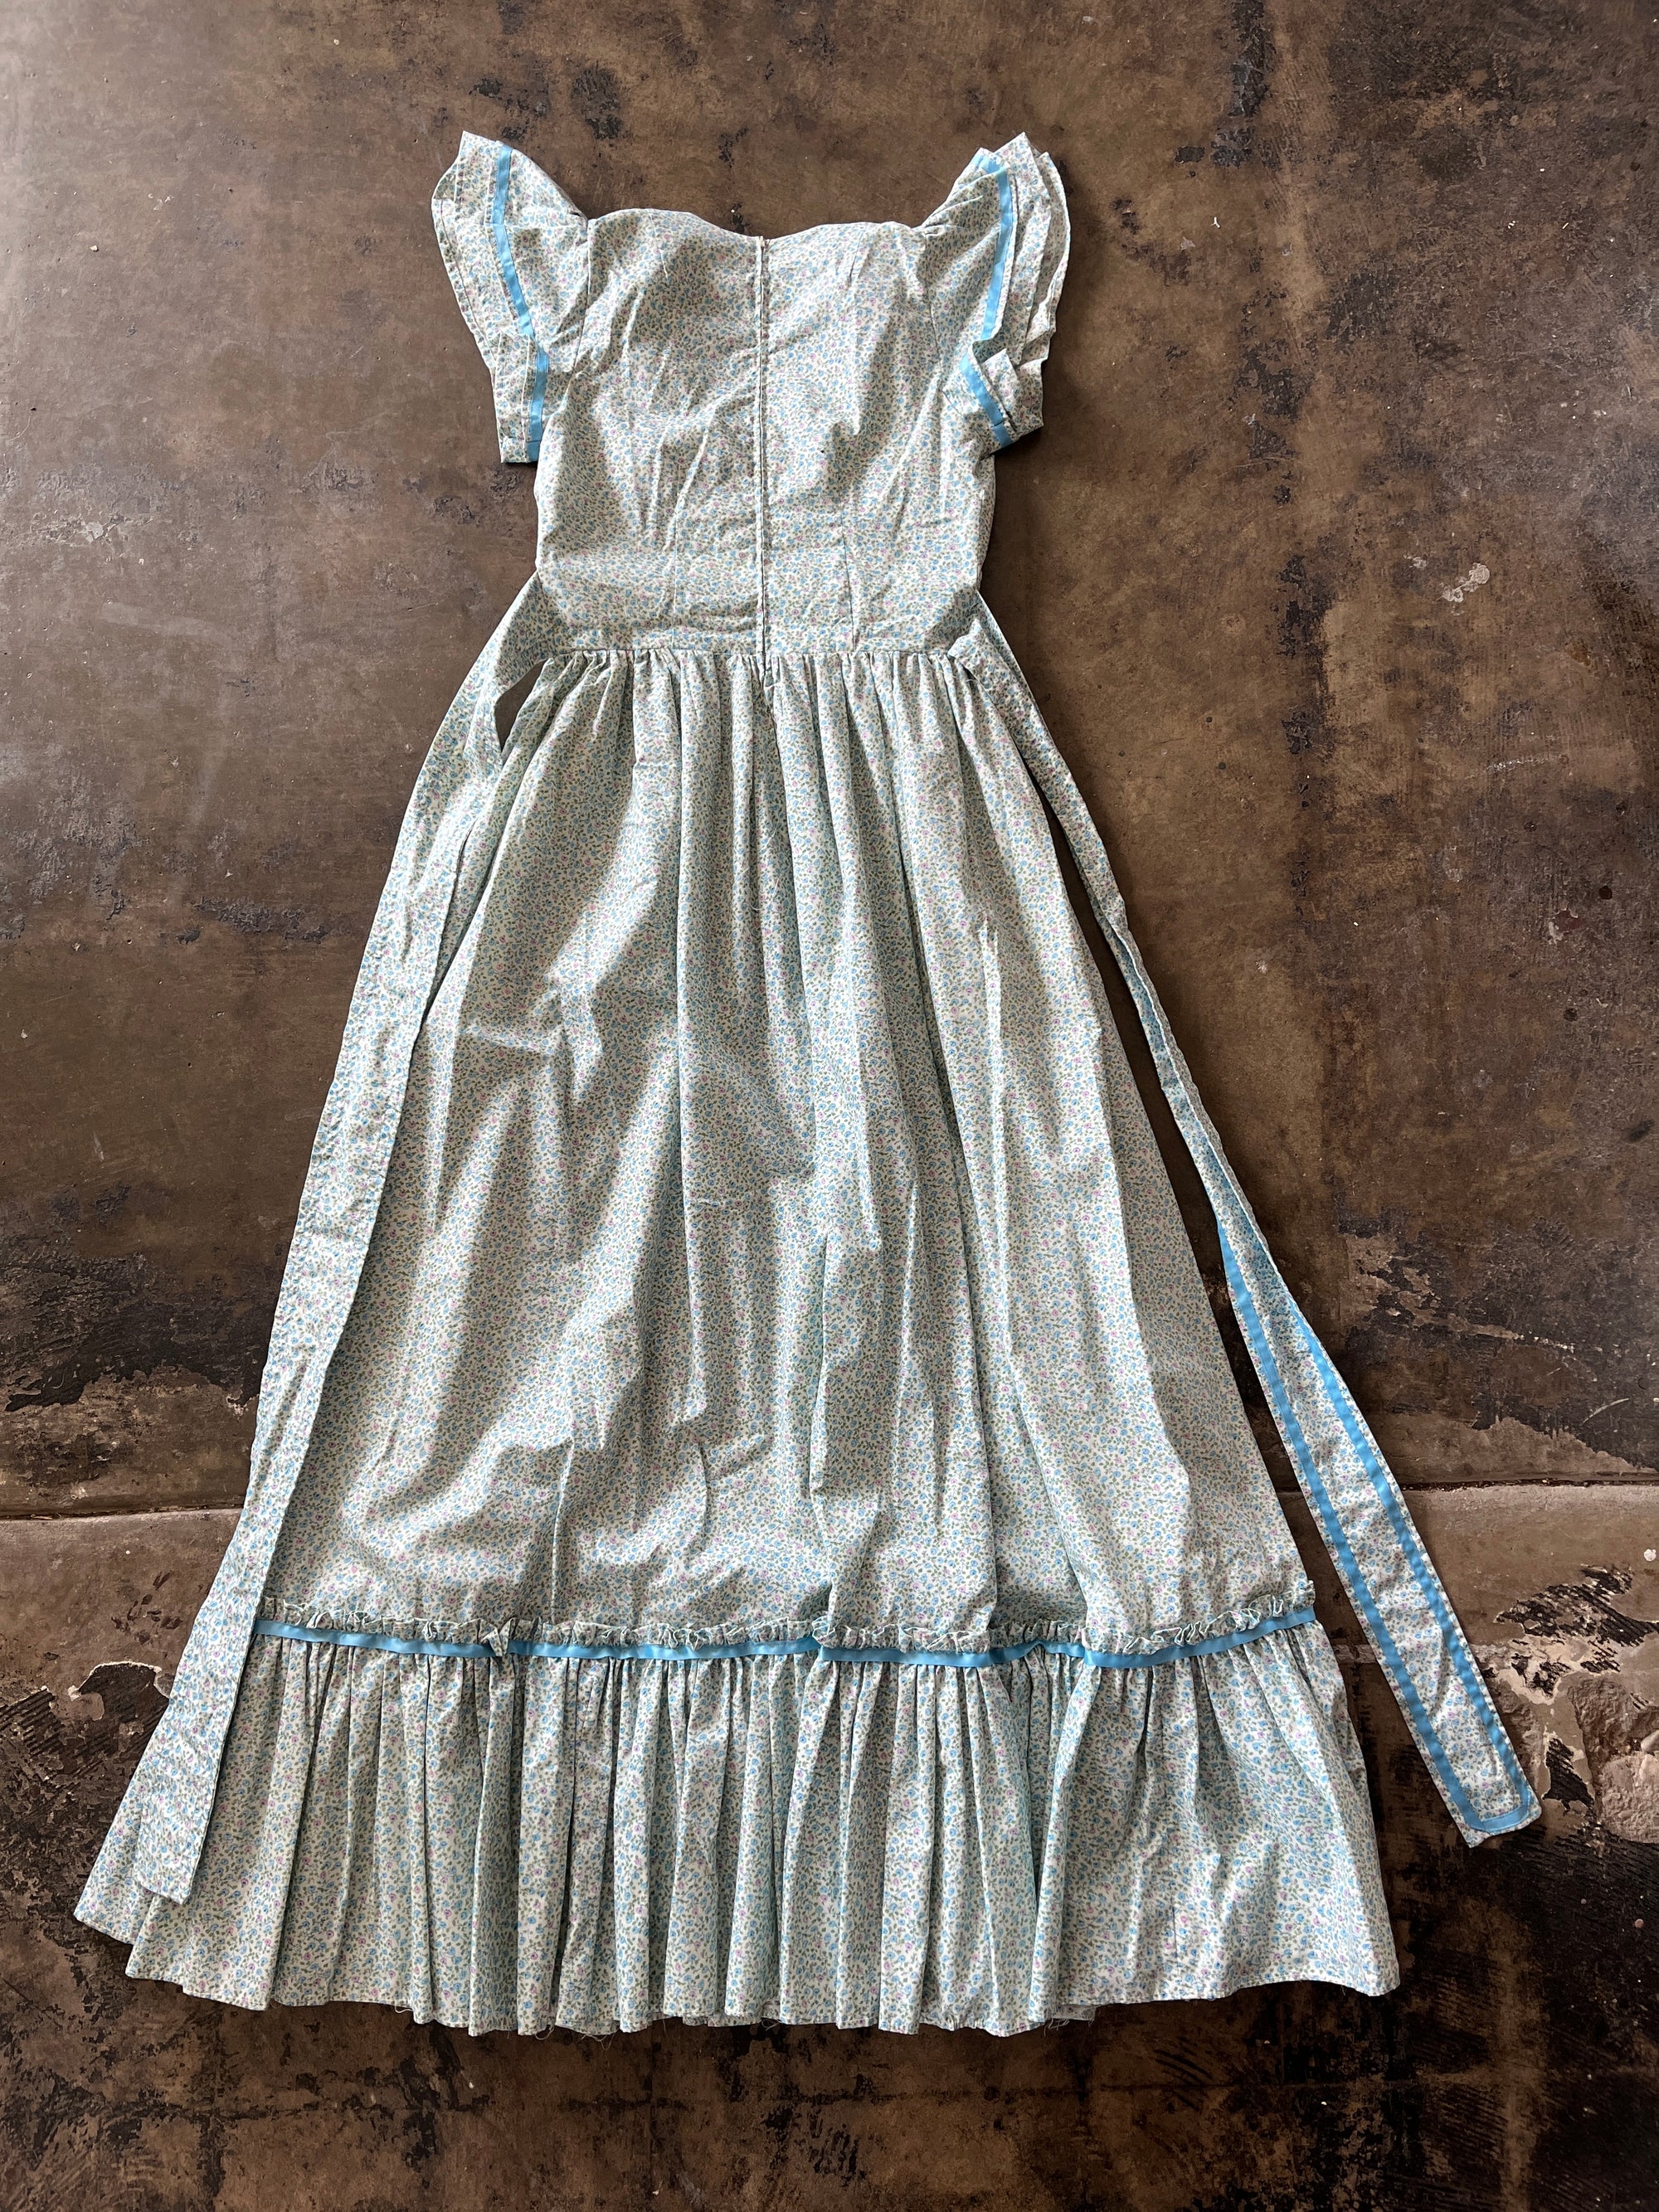 Handmade Blue Floral Prairie Dress